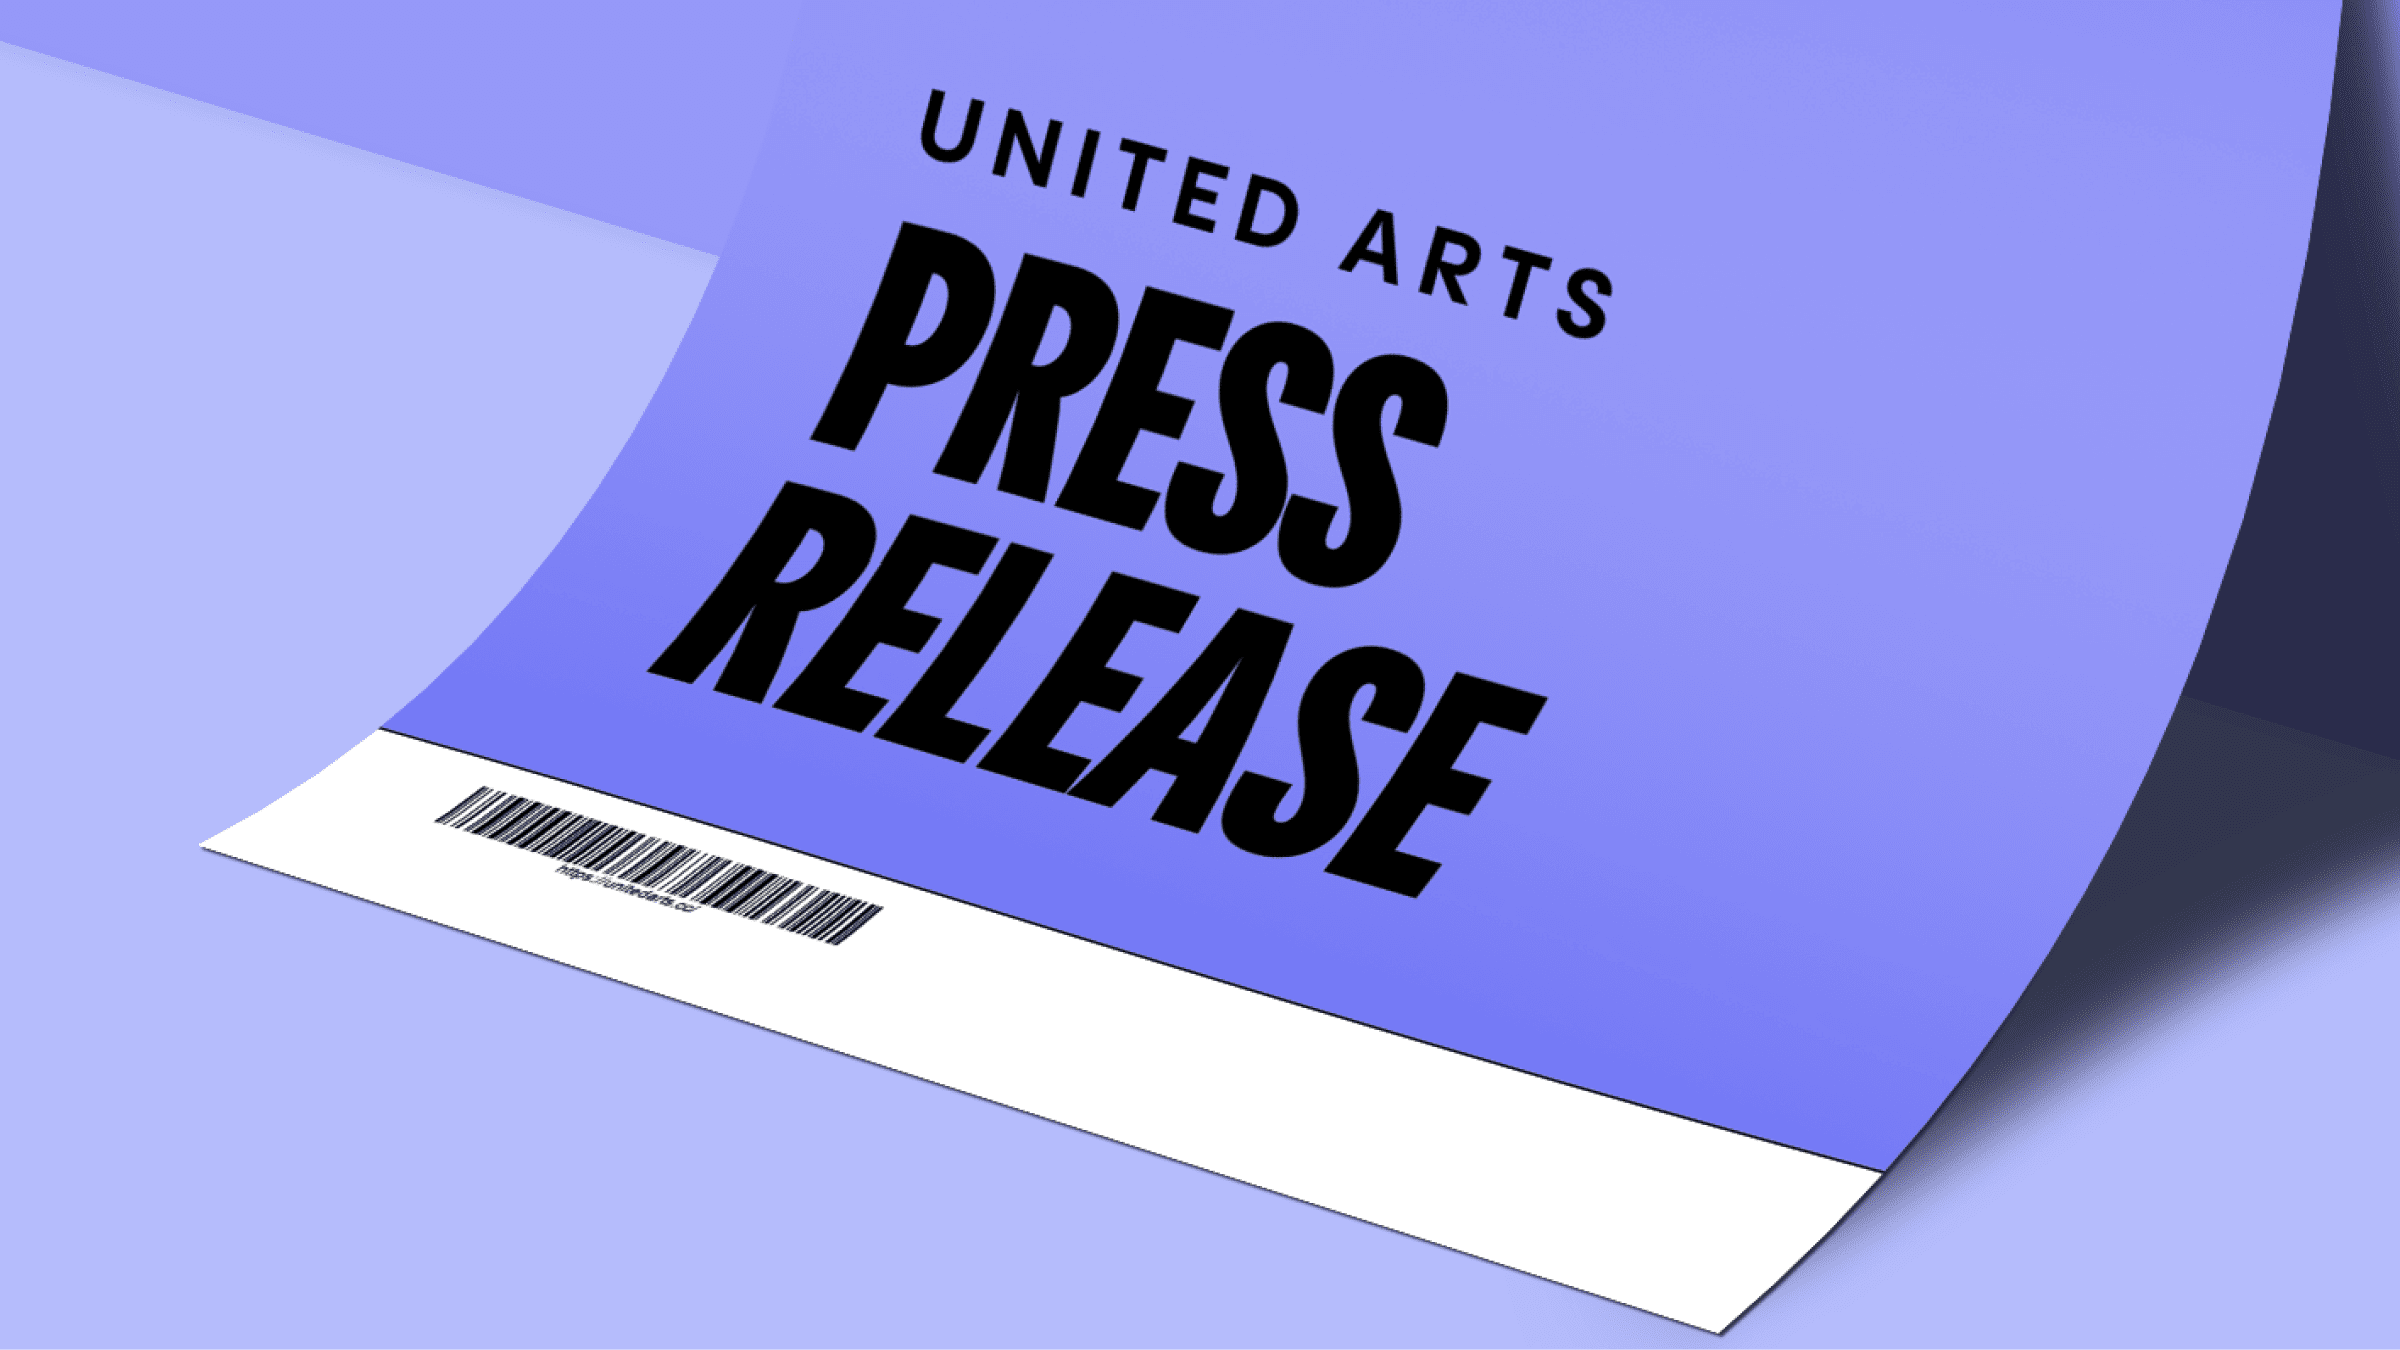 united arts press release